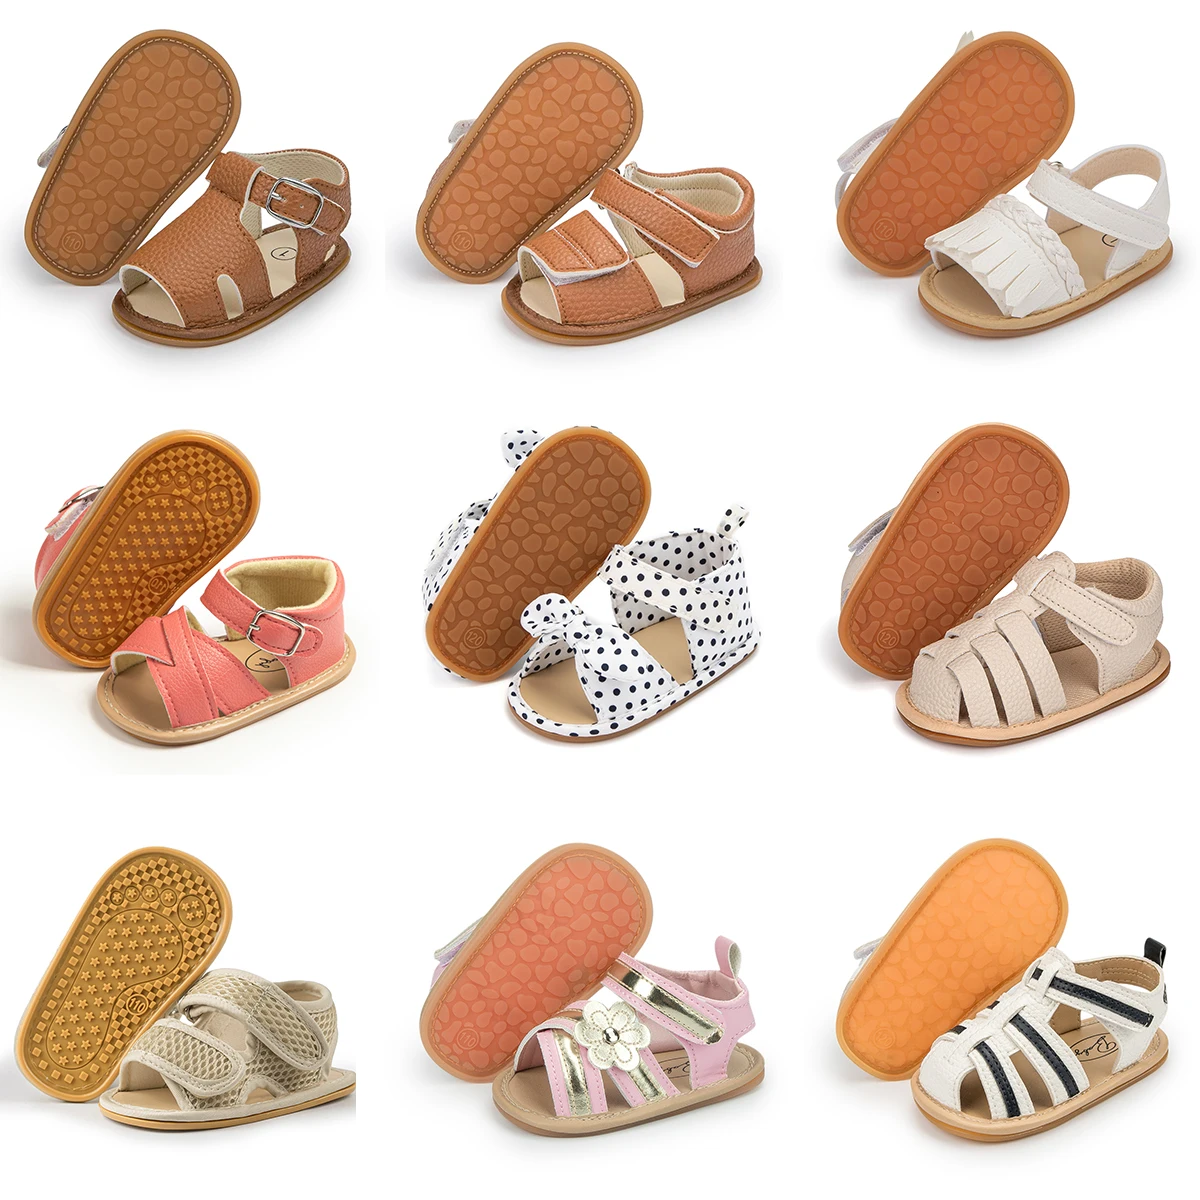 KIDSUN Summer Baby Shoes Boys Girls Garden Sandals Flat Shoes Soft Rubber Soles Non-Slip Toddler First Walker Shoes